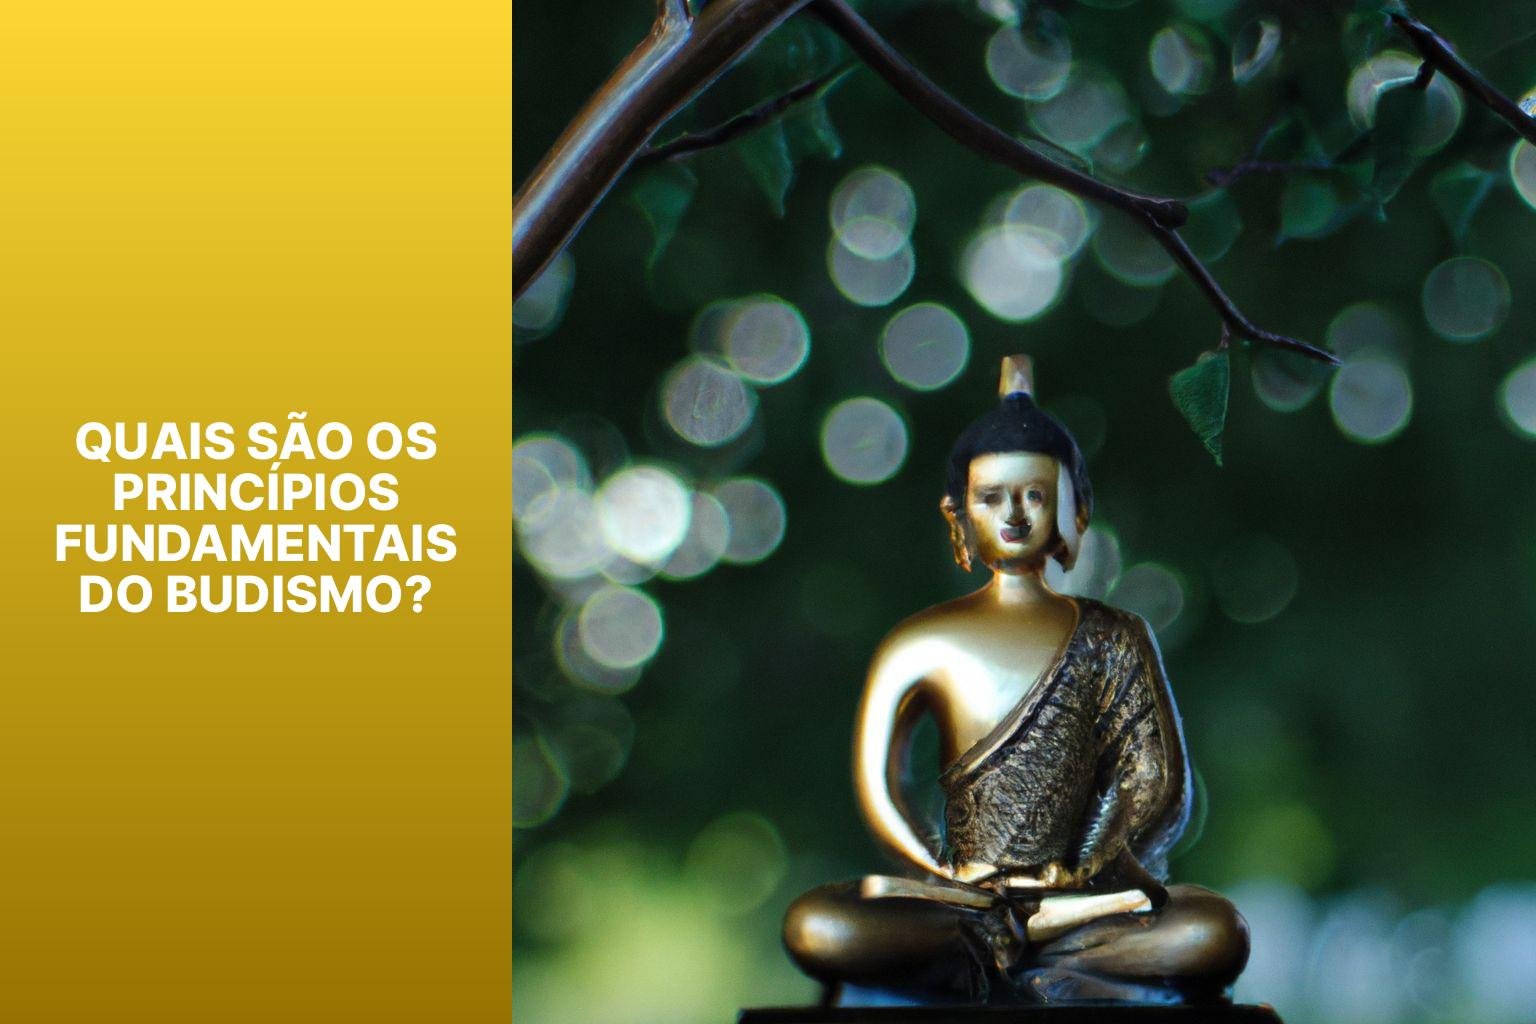 Quais são os Princípios Fundamentais do Budismo? - Budismo É Monoteista 